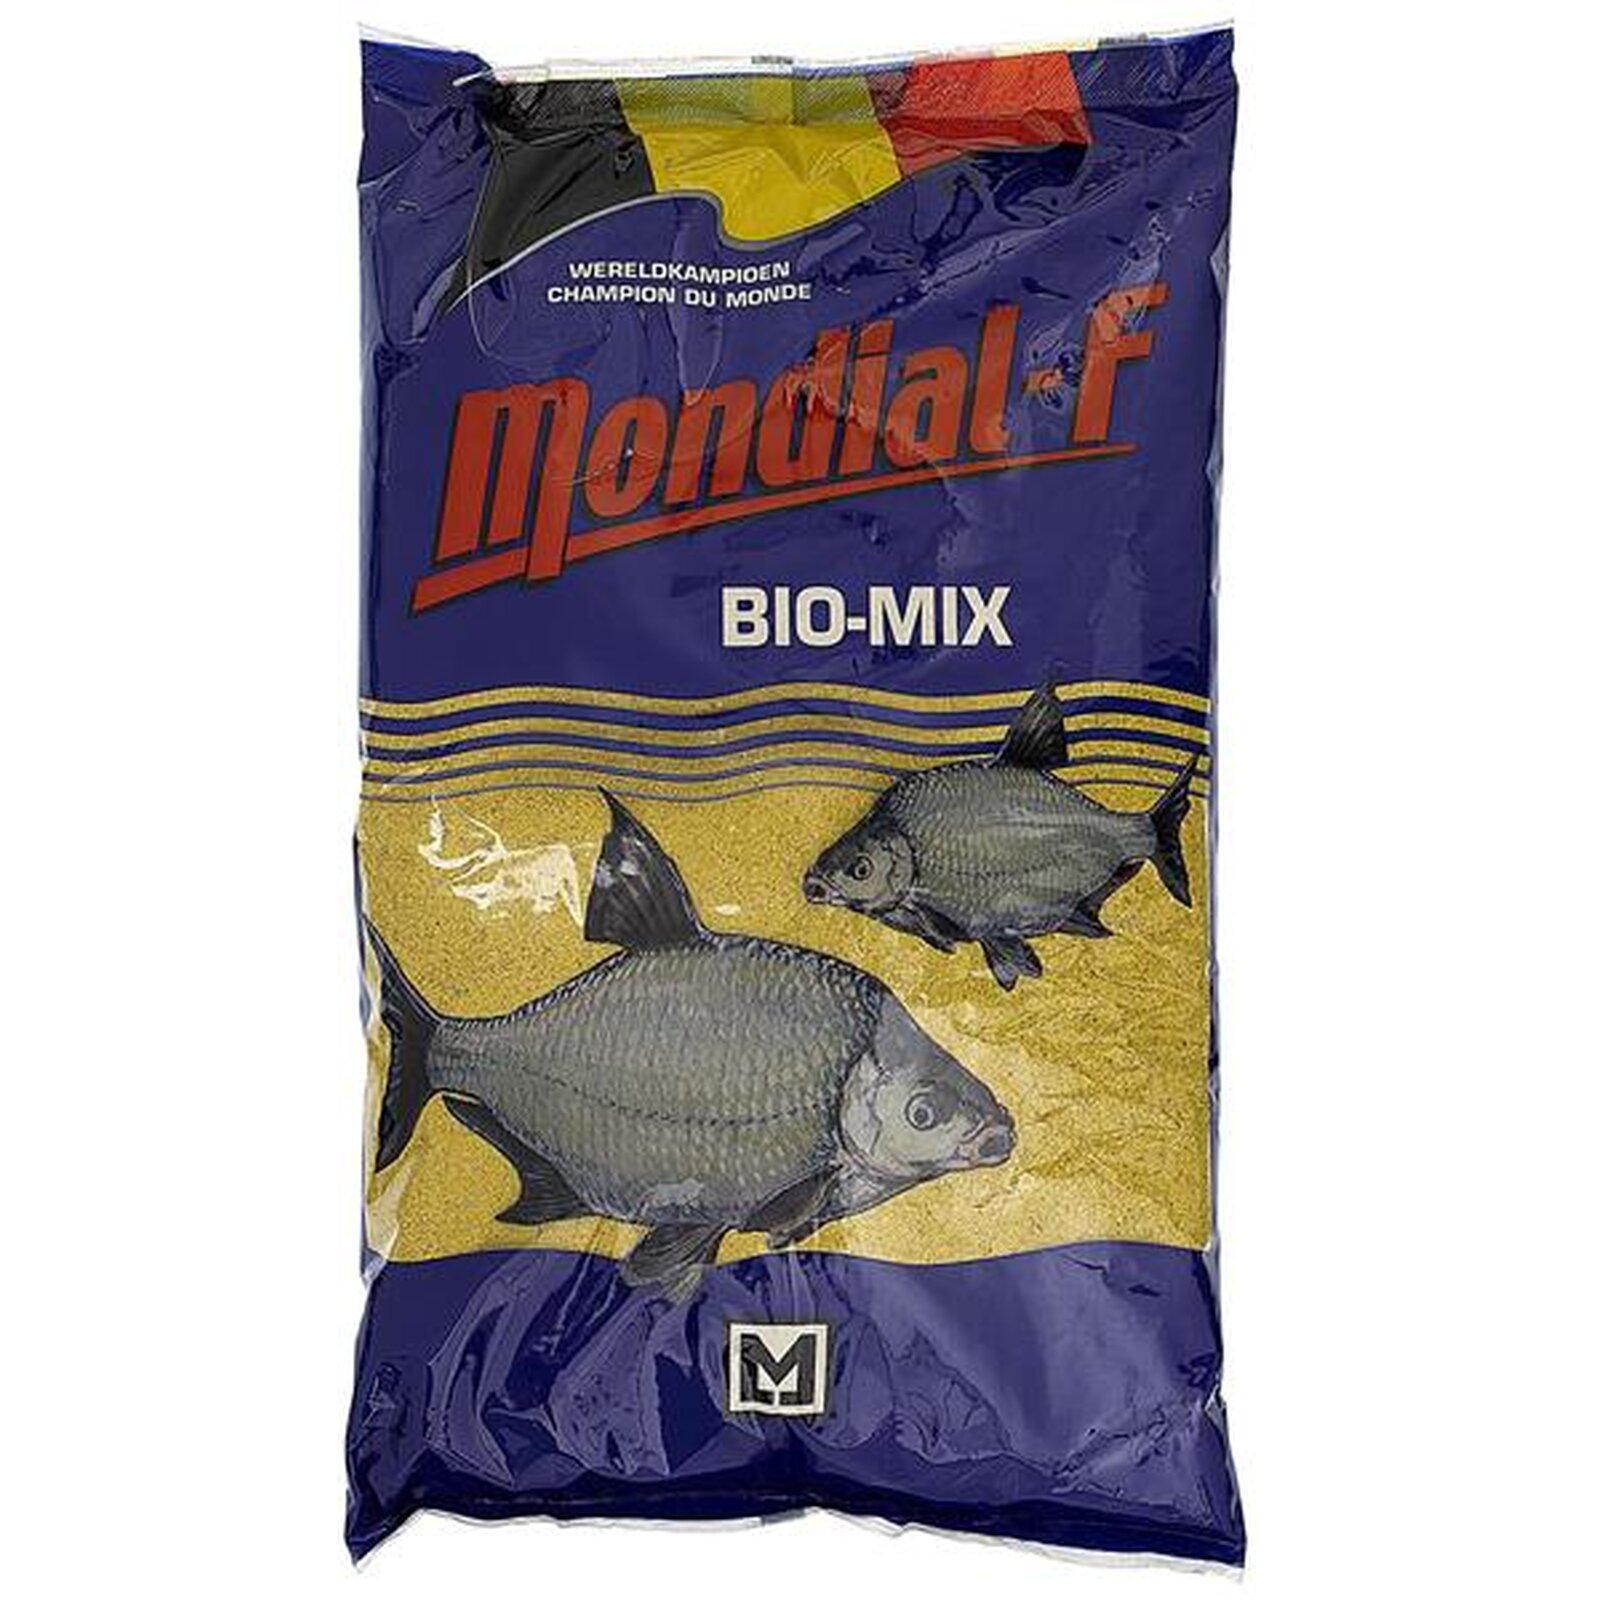 Mondial-F Bio Mix gelb Brassenfutter- 2,0kg